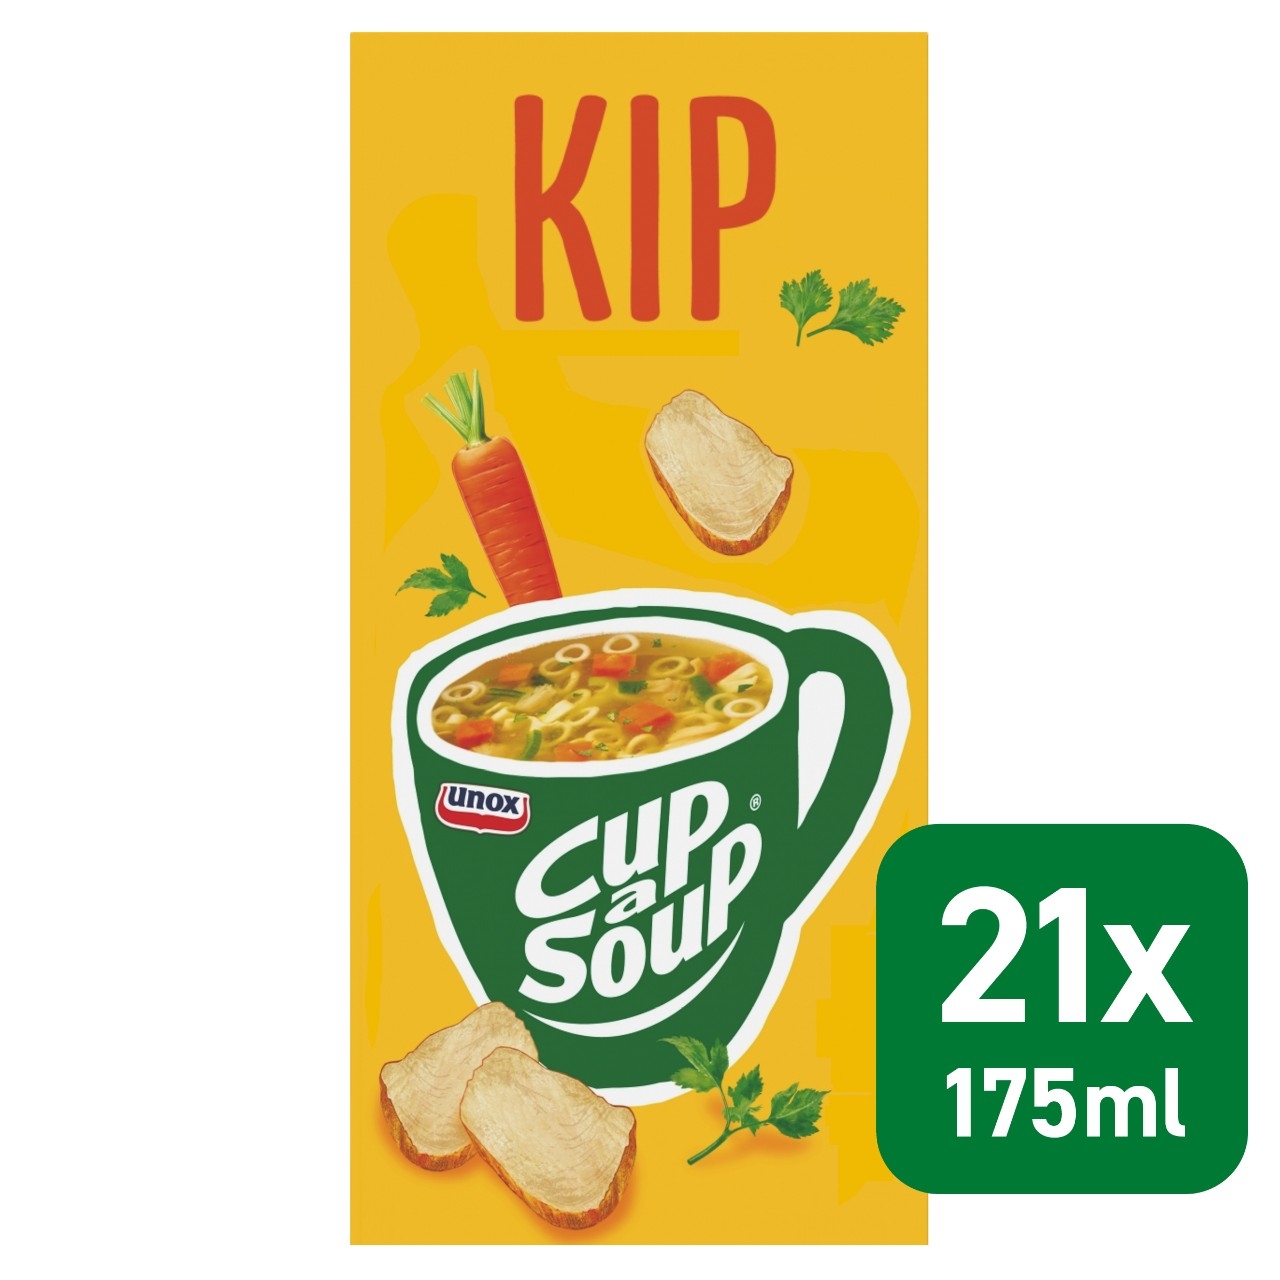 Cup a soup kip 21 zakjes